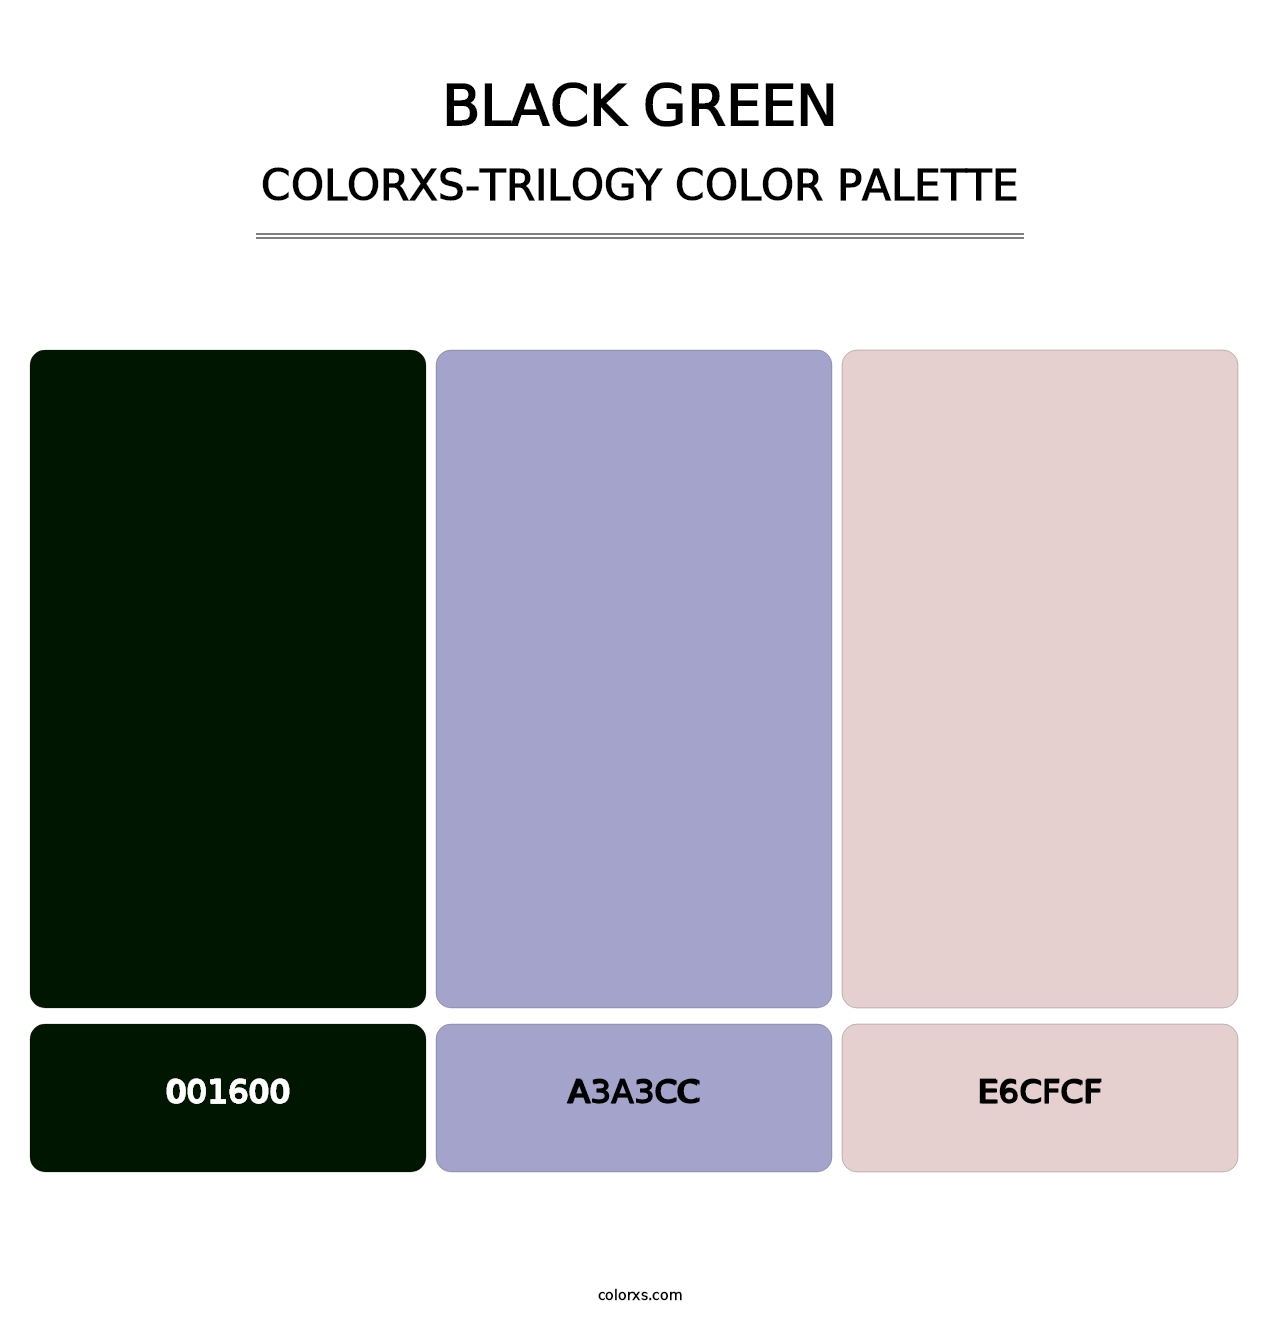 Black Green - Colorxs Trilogy Palette